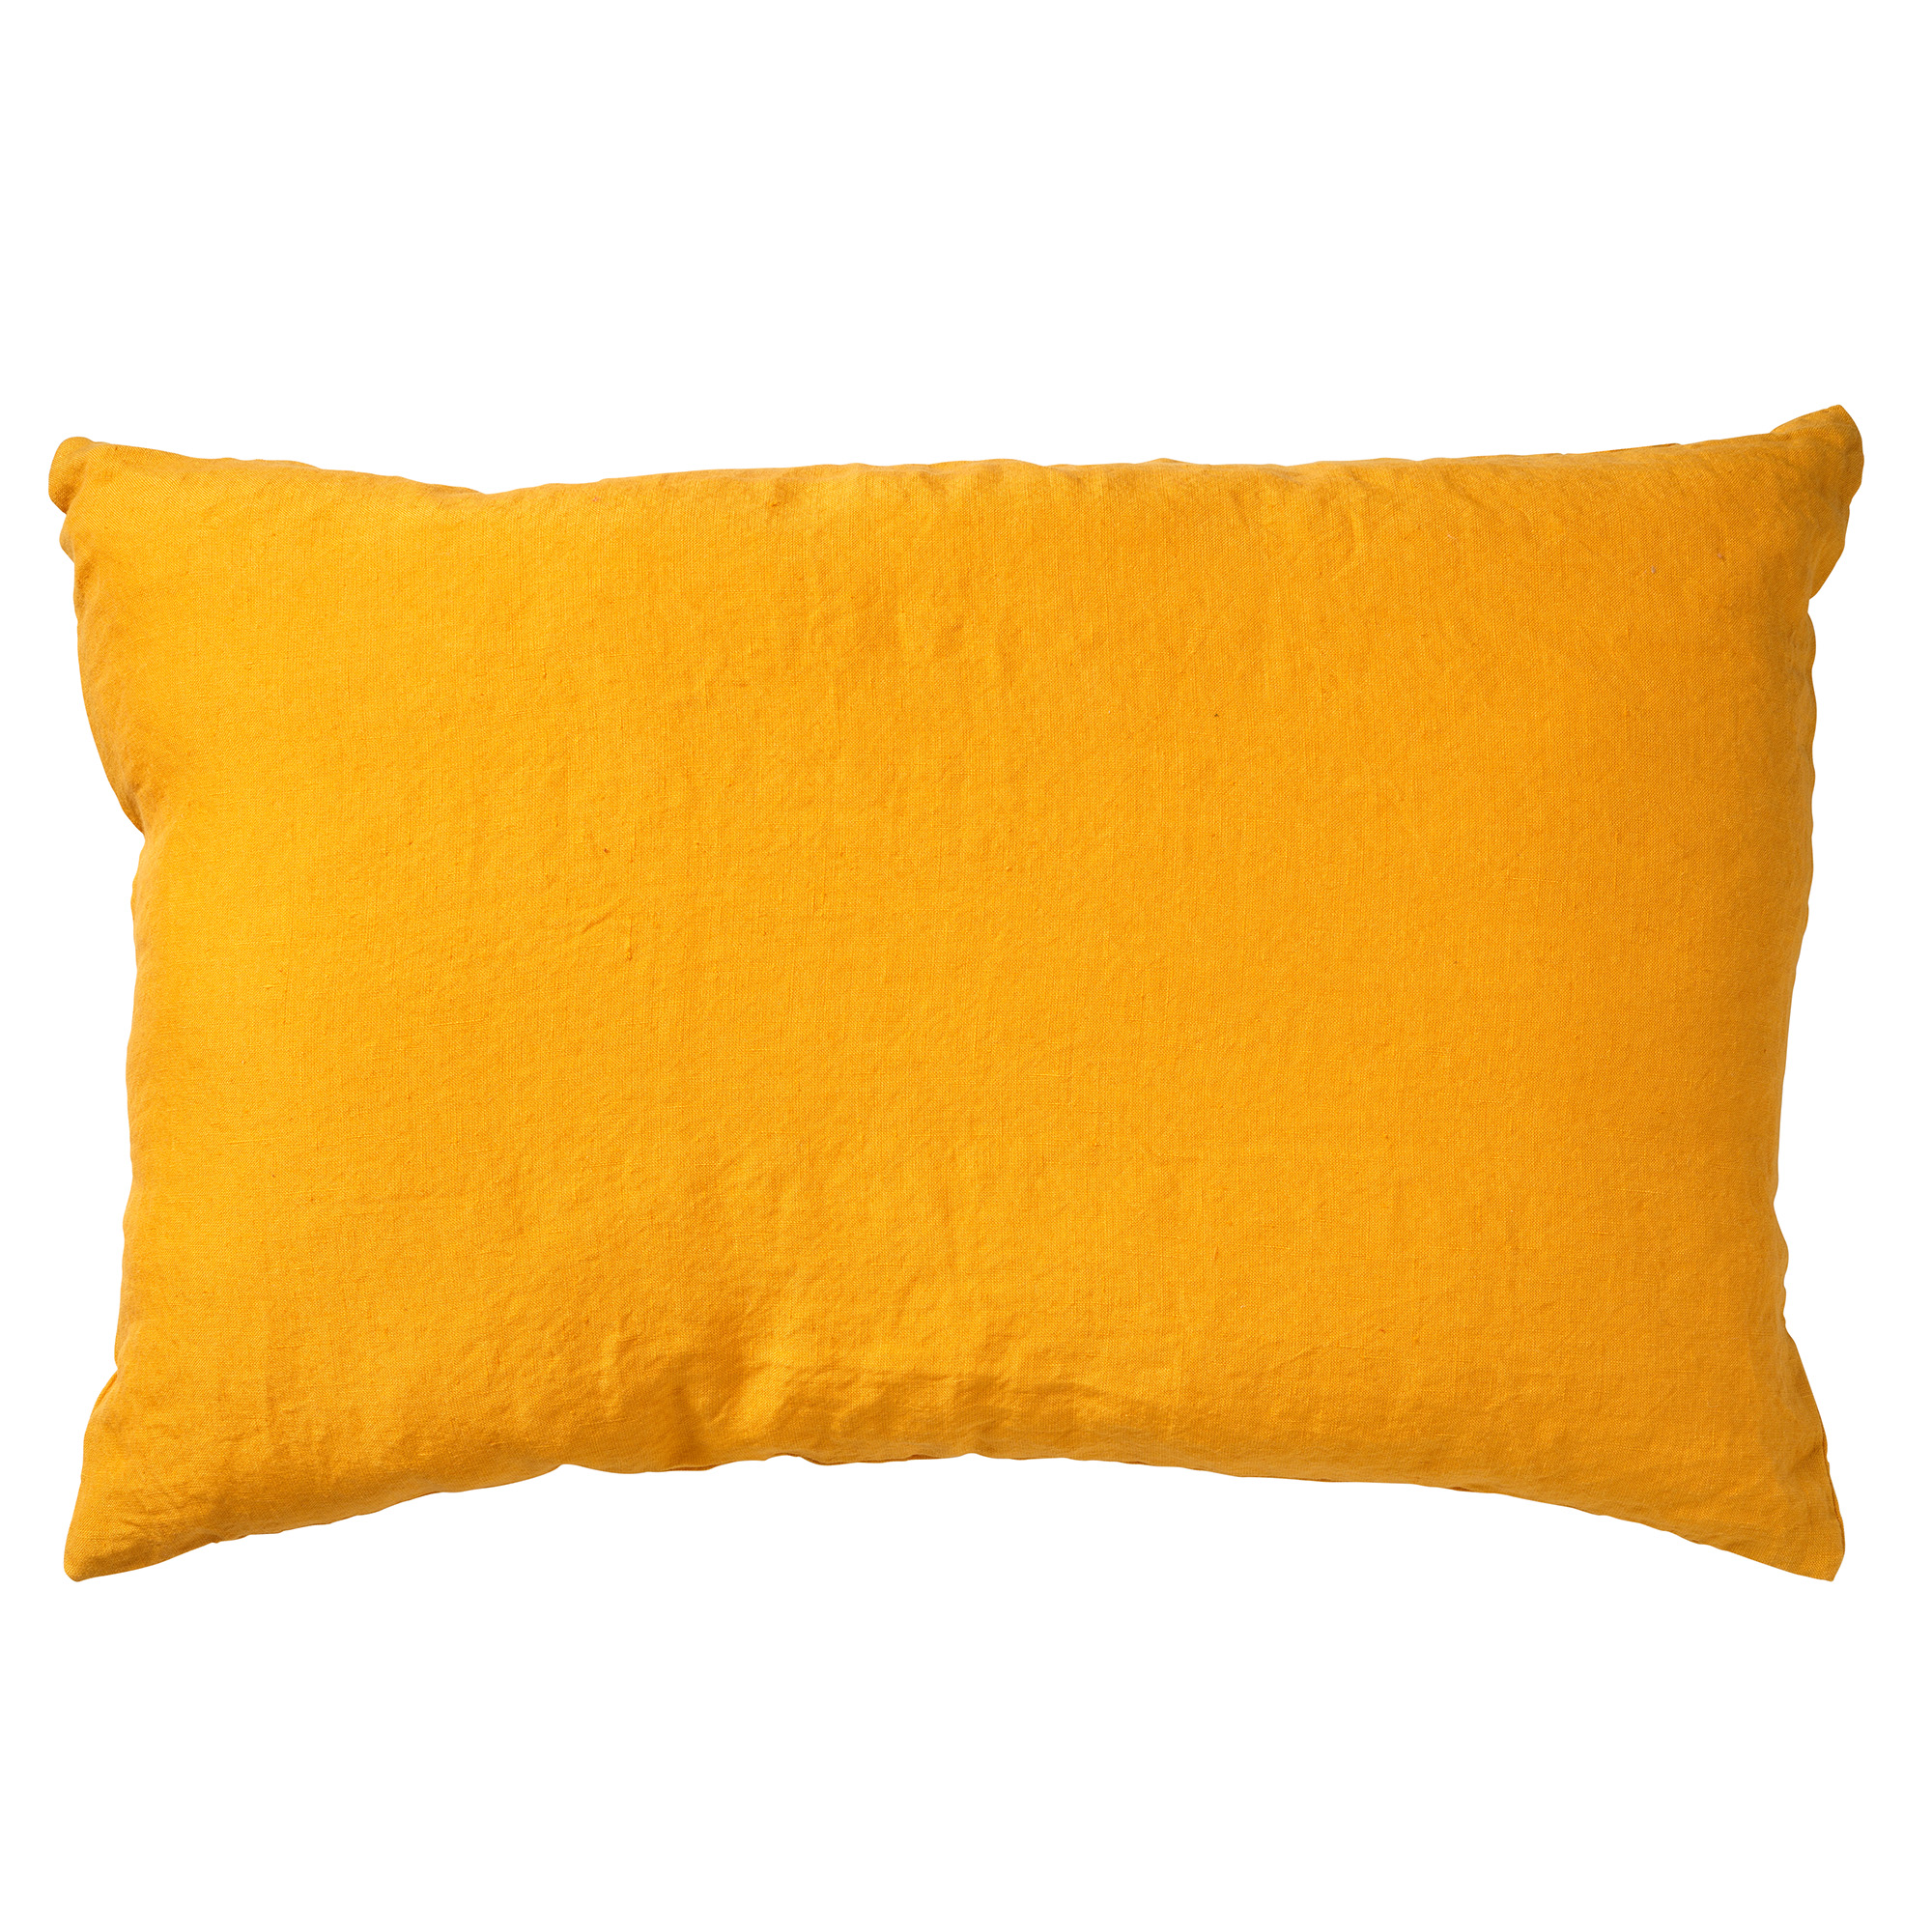 LINN - Cushion 40x60 cm Golden Glow - yellow-ochre